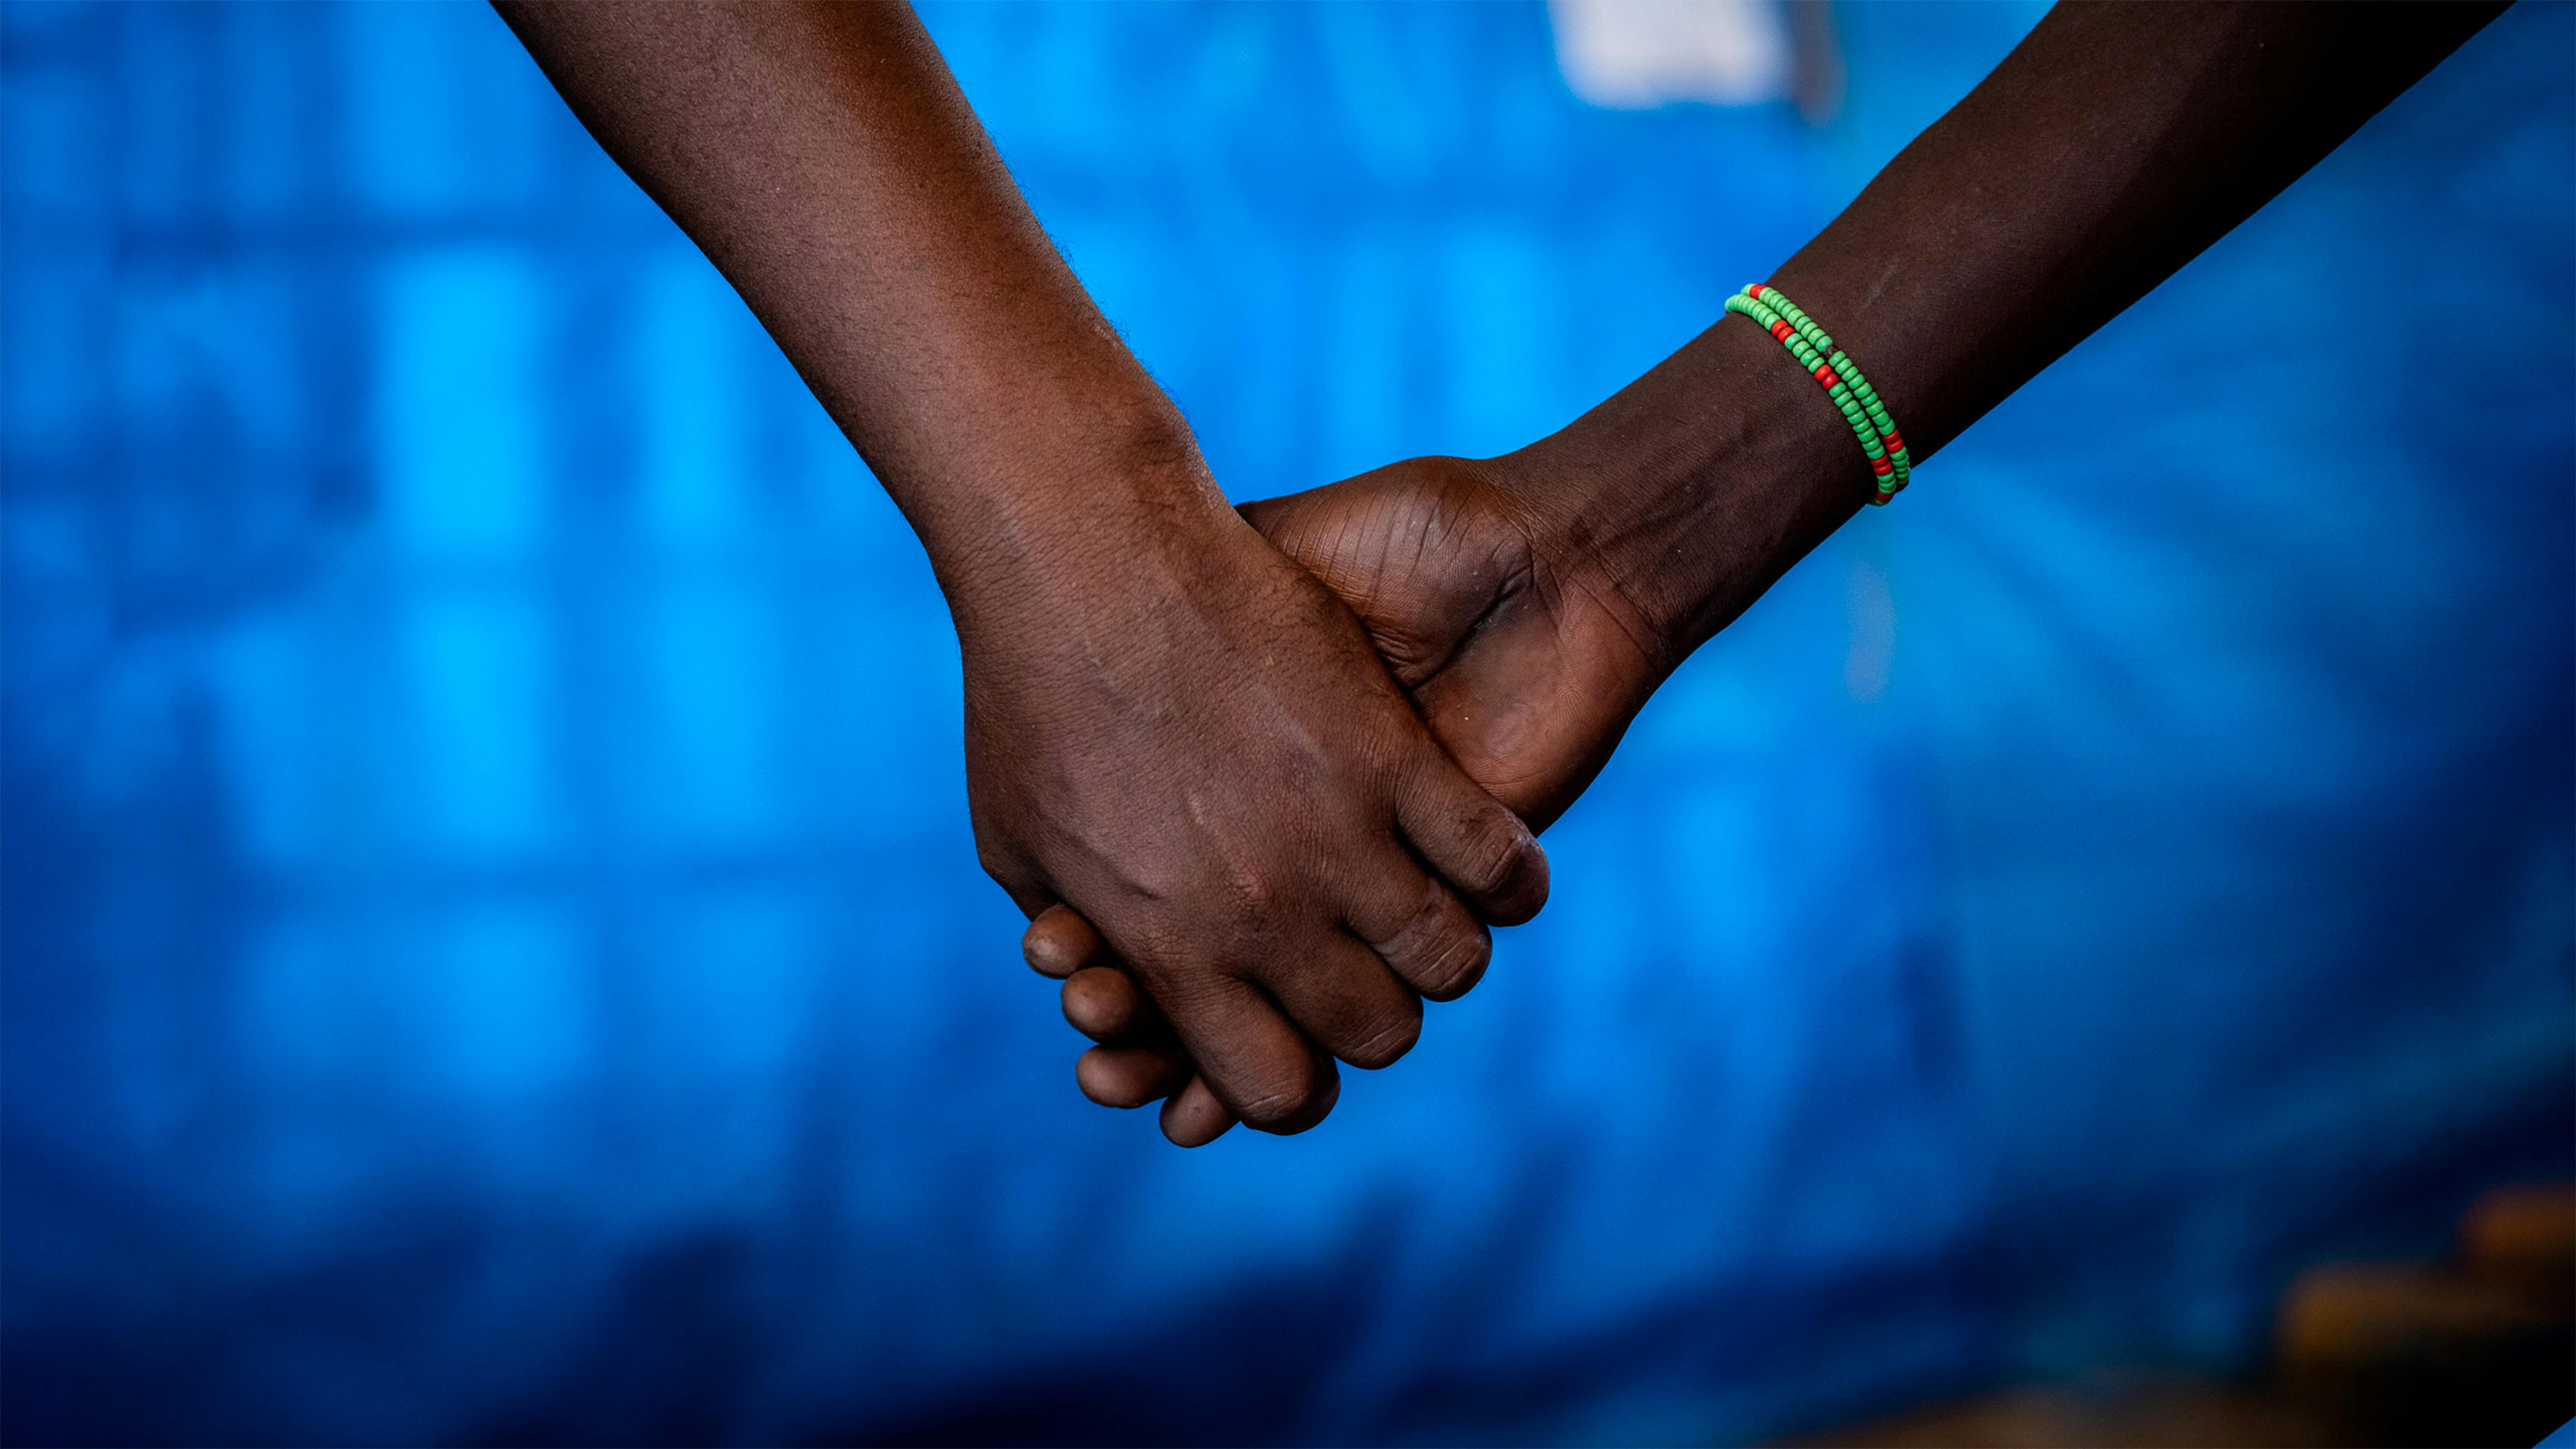 L'infanzia distrutta della tredicenne Enat, costretta a lasciare la scuola e a sposare uno sconosciuto per aiutare la sua famiglia a far fronte alle difficoltà dovute alla siccità in Etiopia